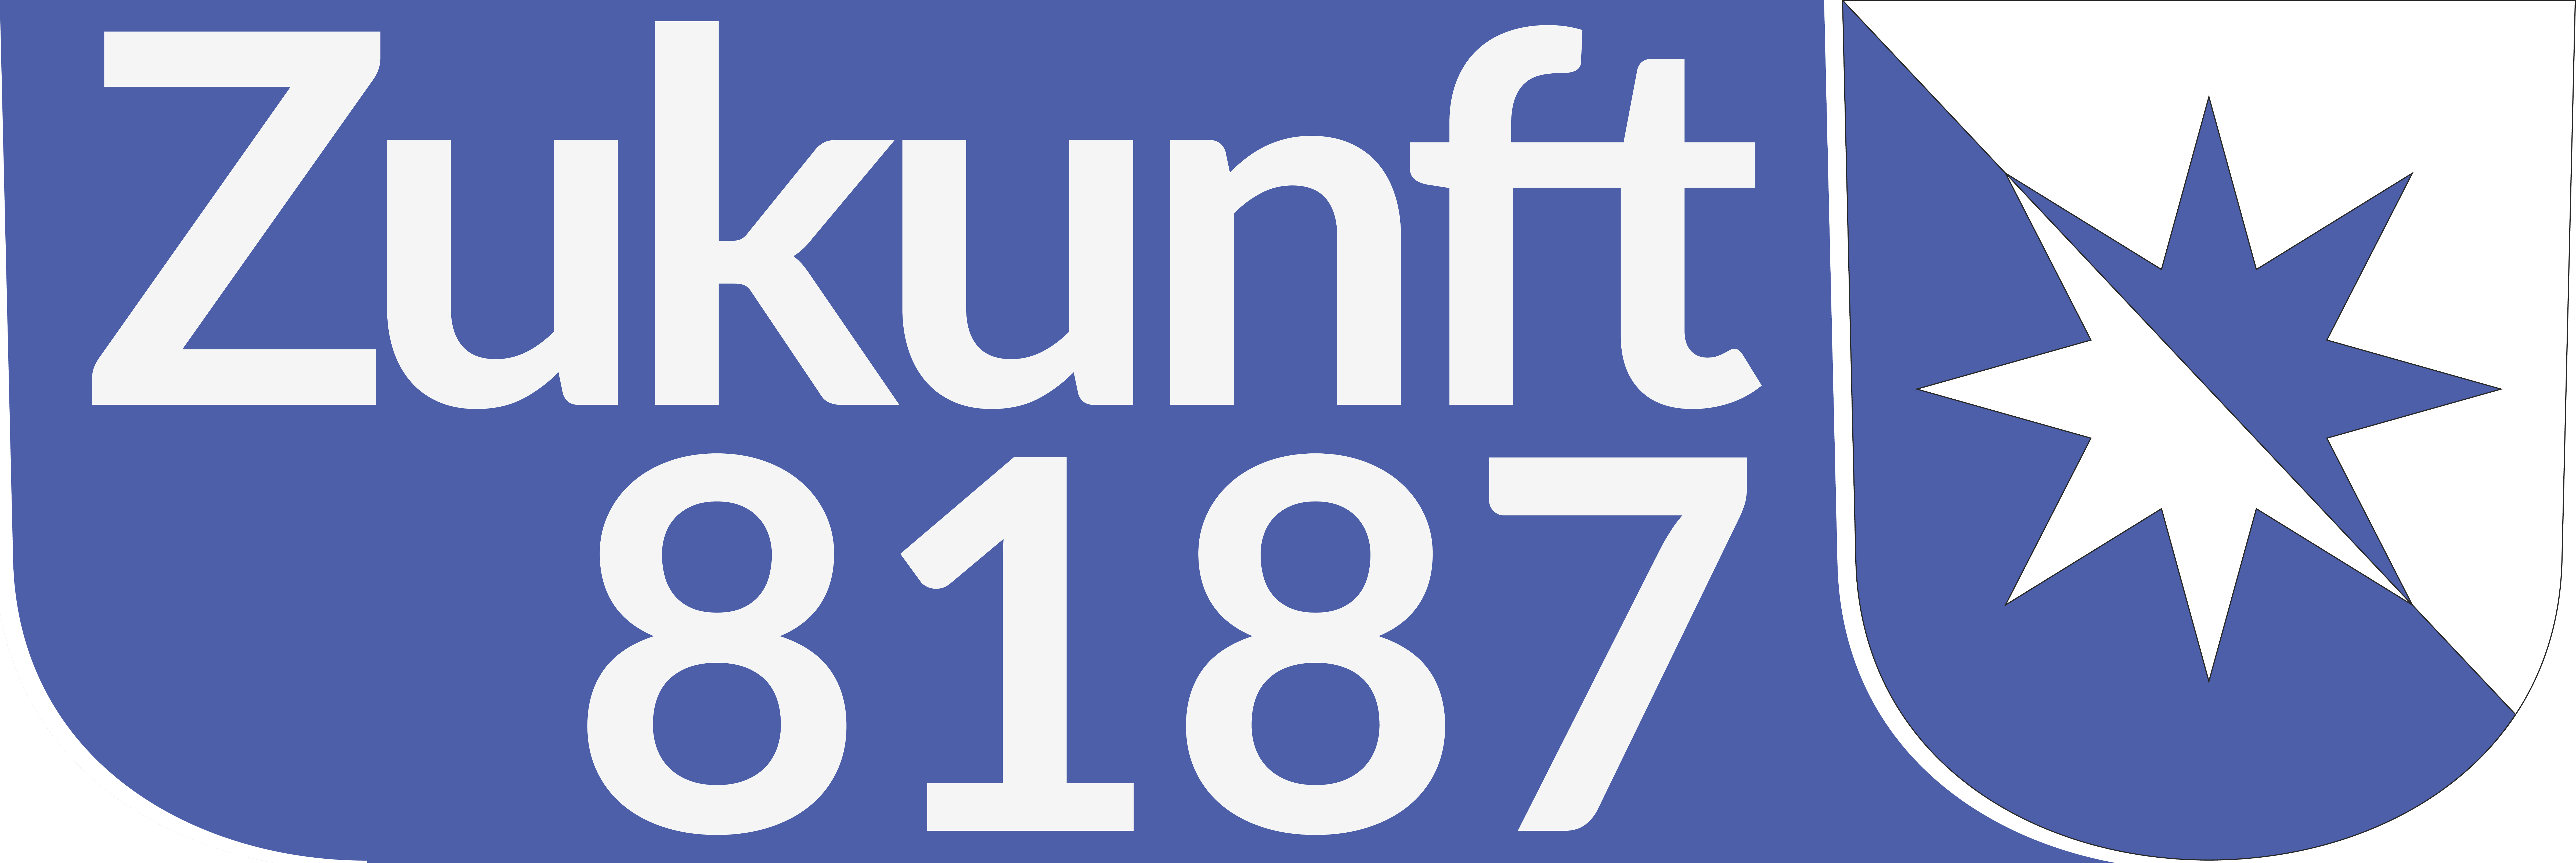 Logo Zukunft 8187